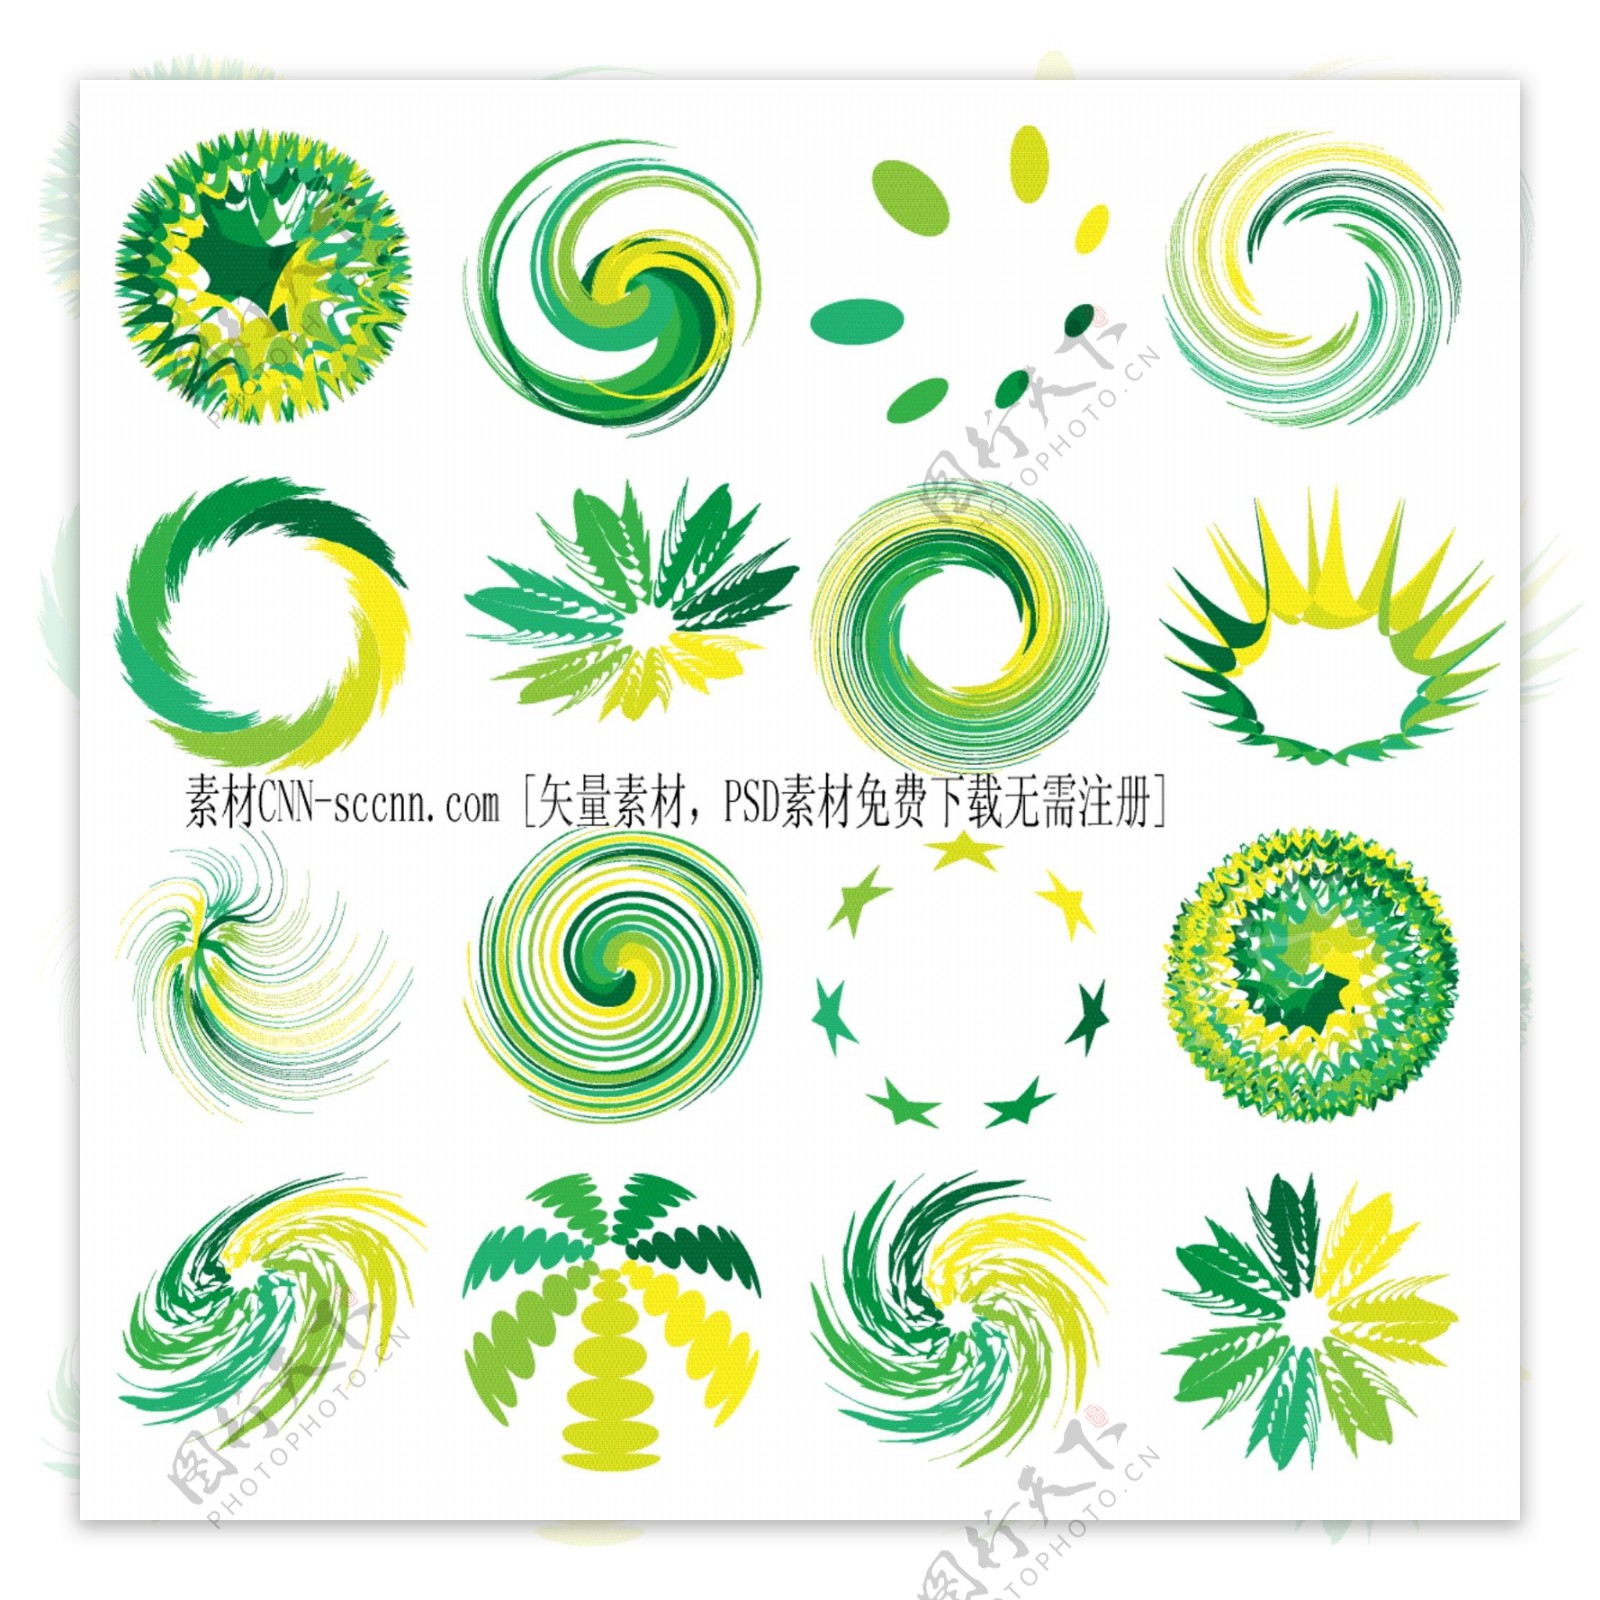 绿色图形动感logo图标设计矢量素材